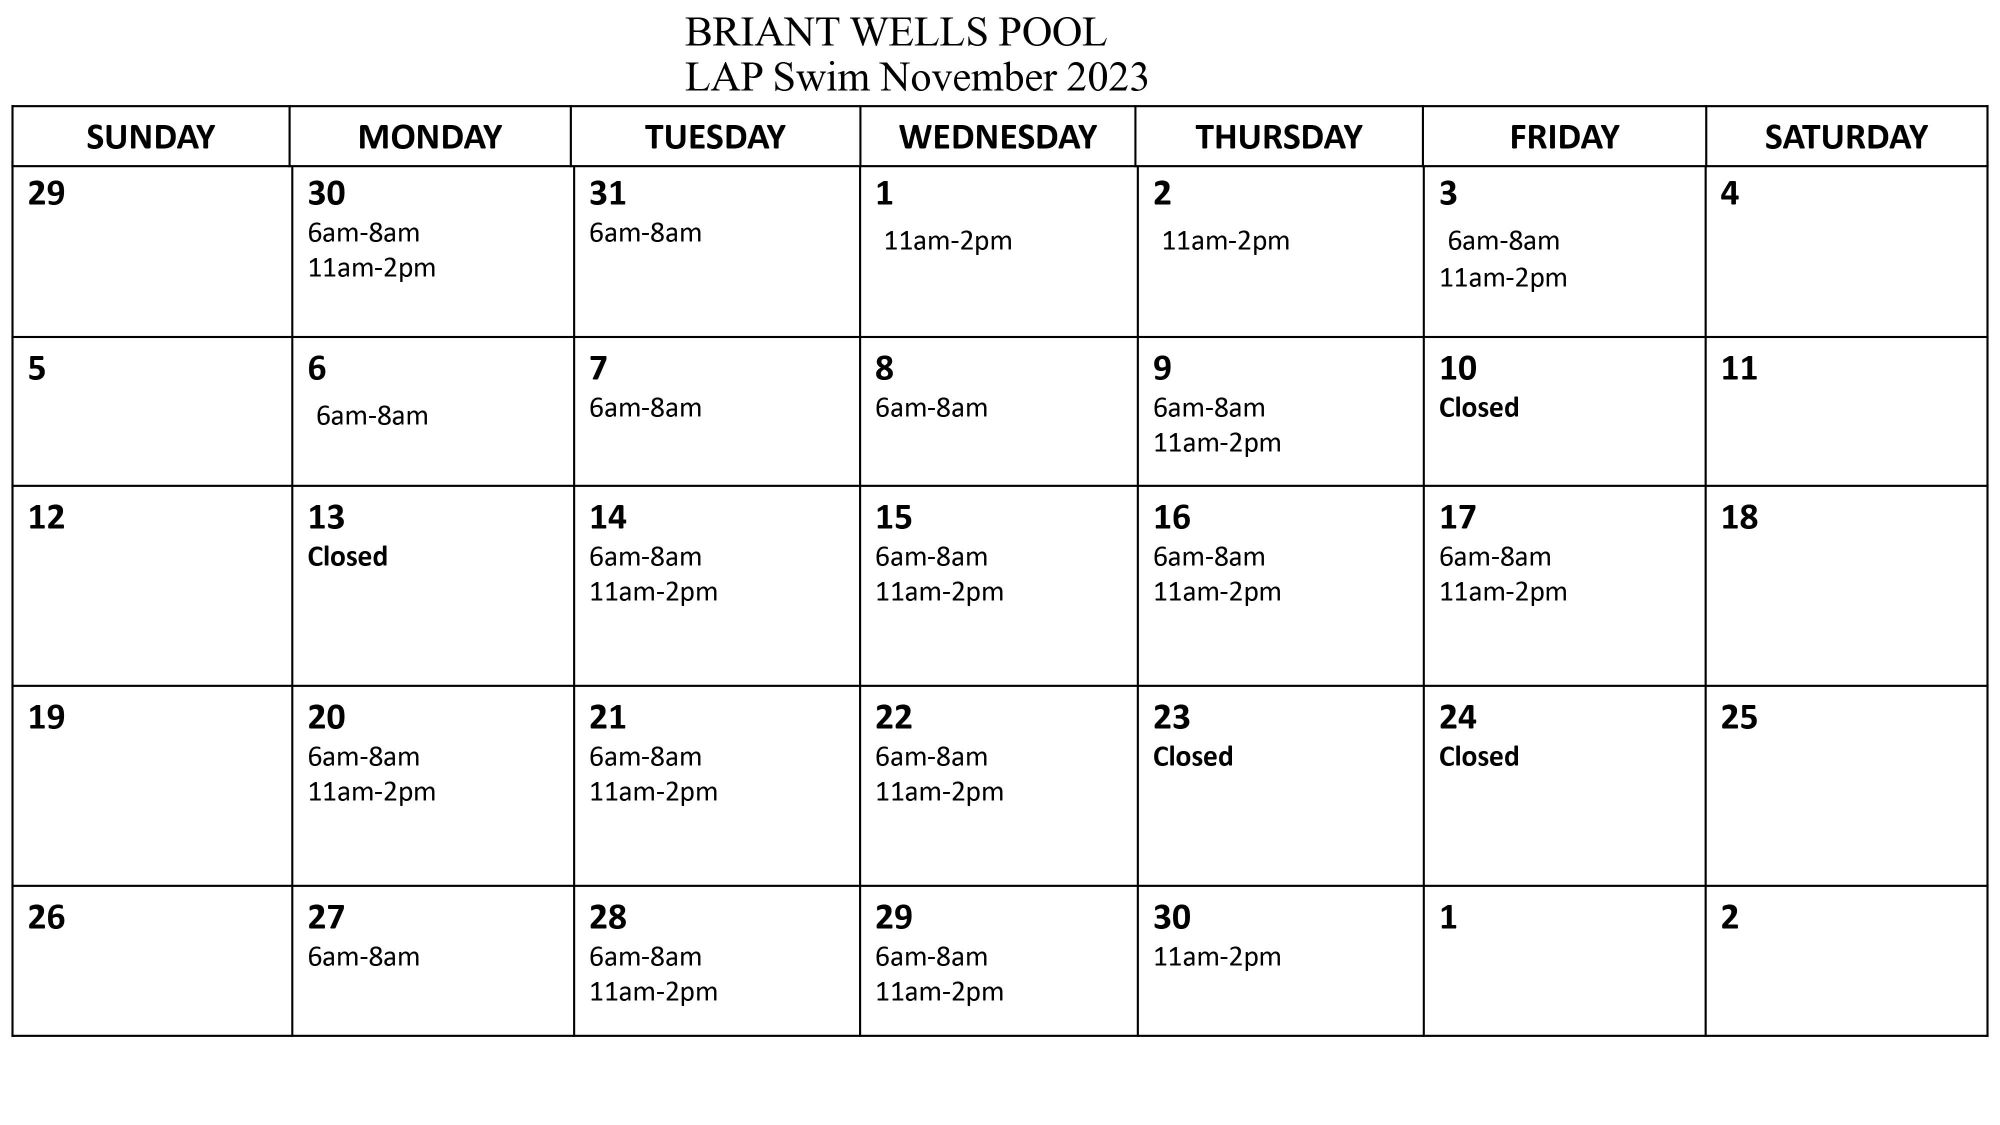 Briant Wells Pool  LAP SWIM  NOV 2023 b.jpg